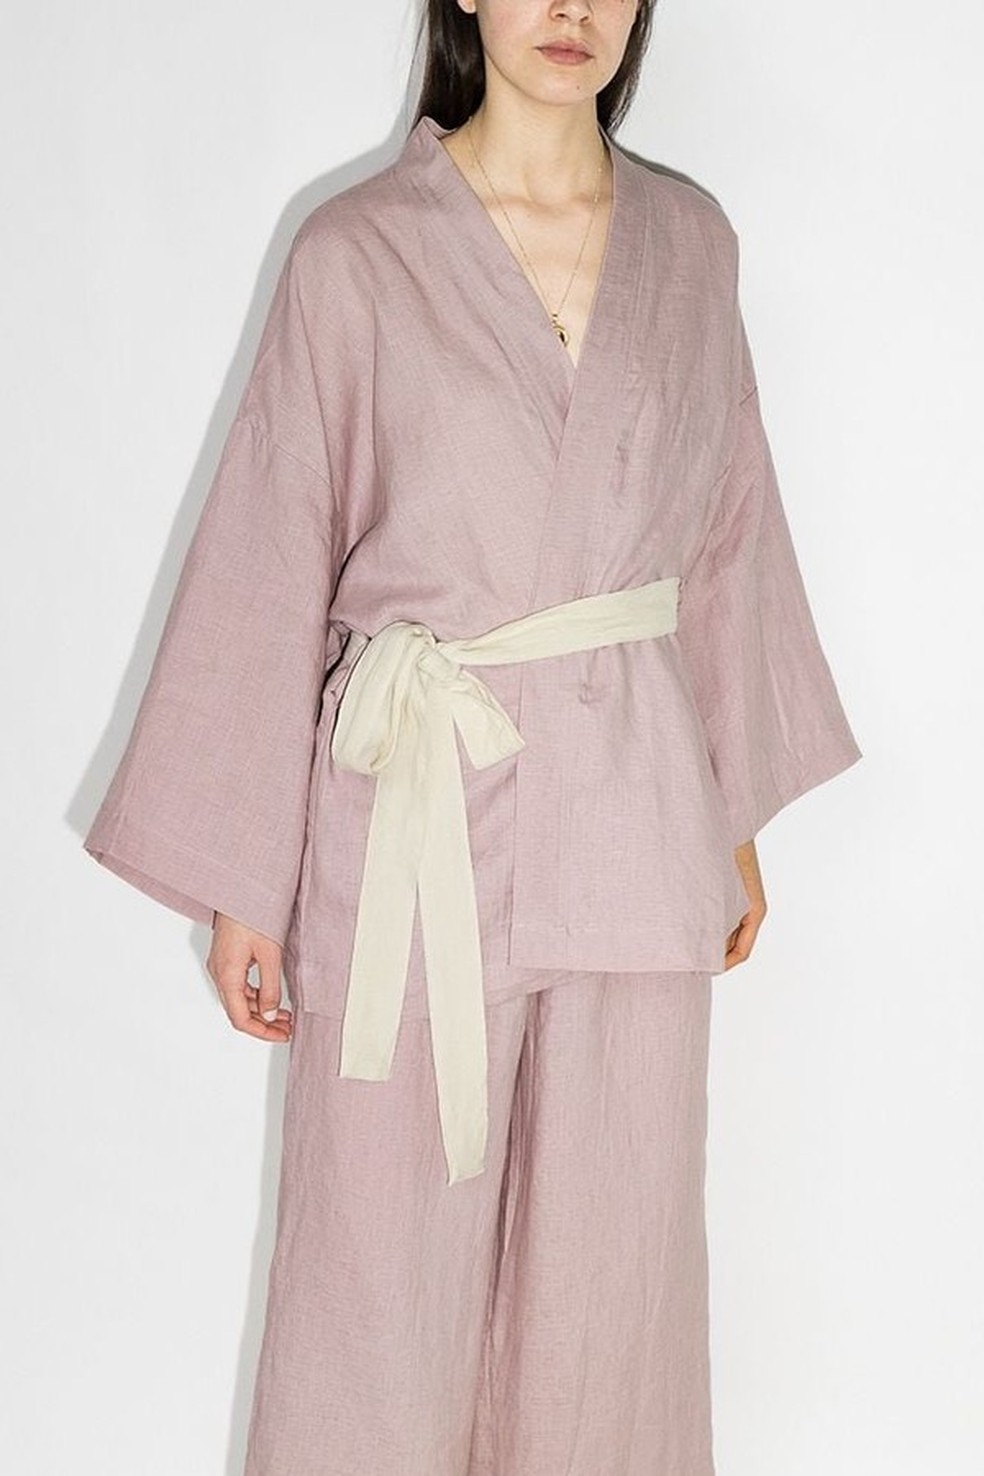 Com traços inspirados nos quimonos, o pijama da Deiji Studios é de linho e cai perfeitamente em mães minimalistas (R$ 1.891 no Farfetch) (Foto: Reprodução/Farfetch) — Foto: Glamour